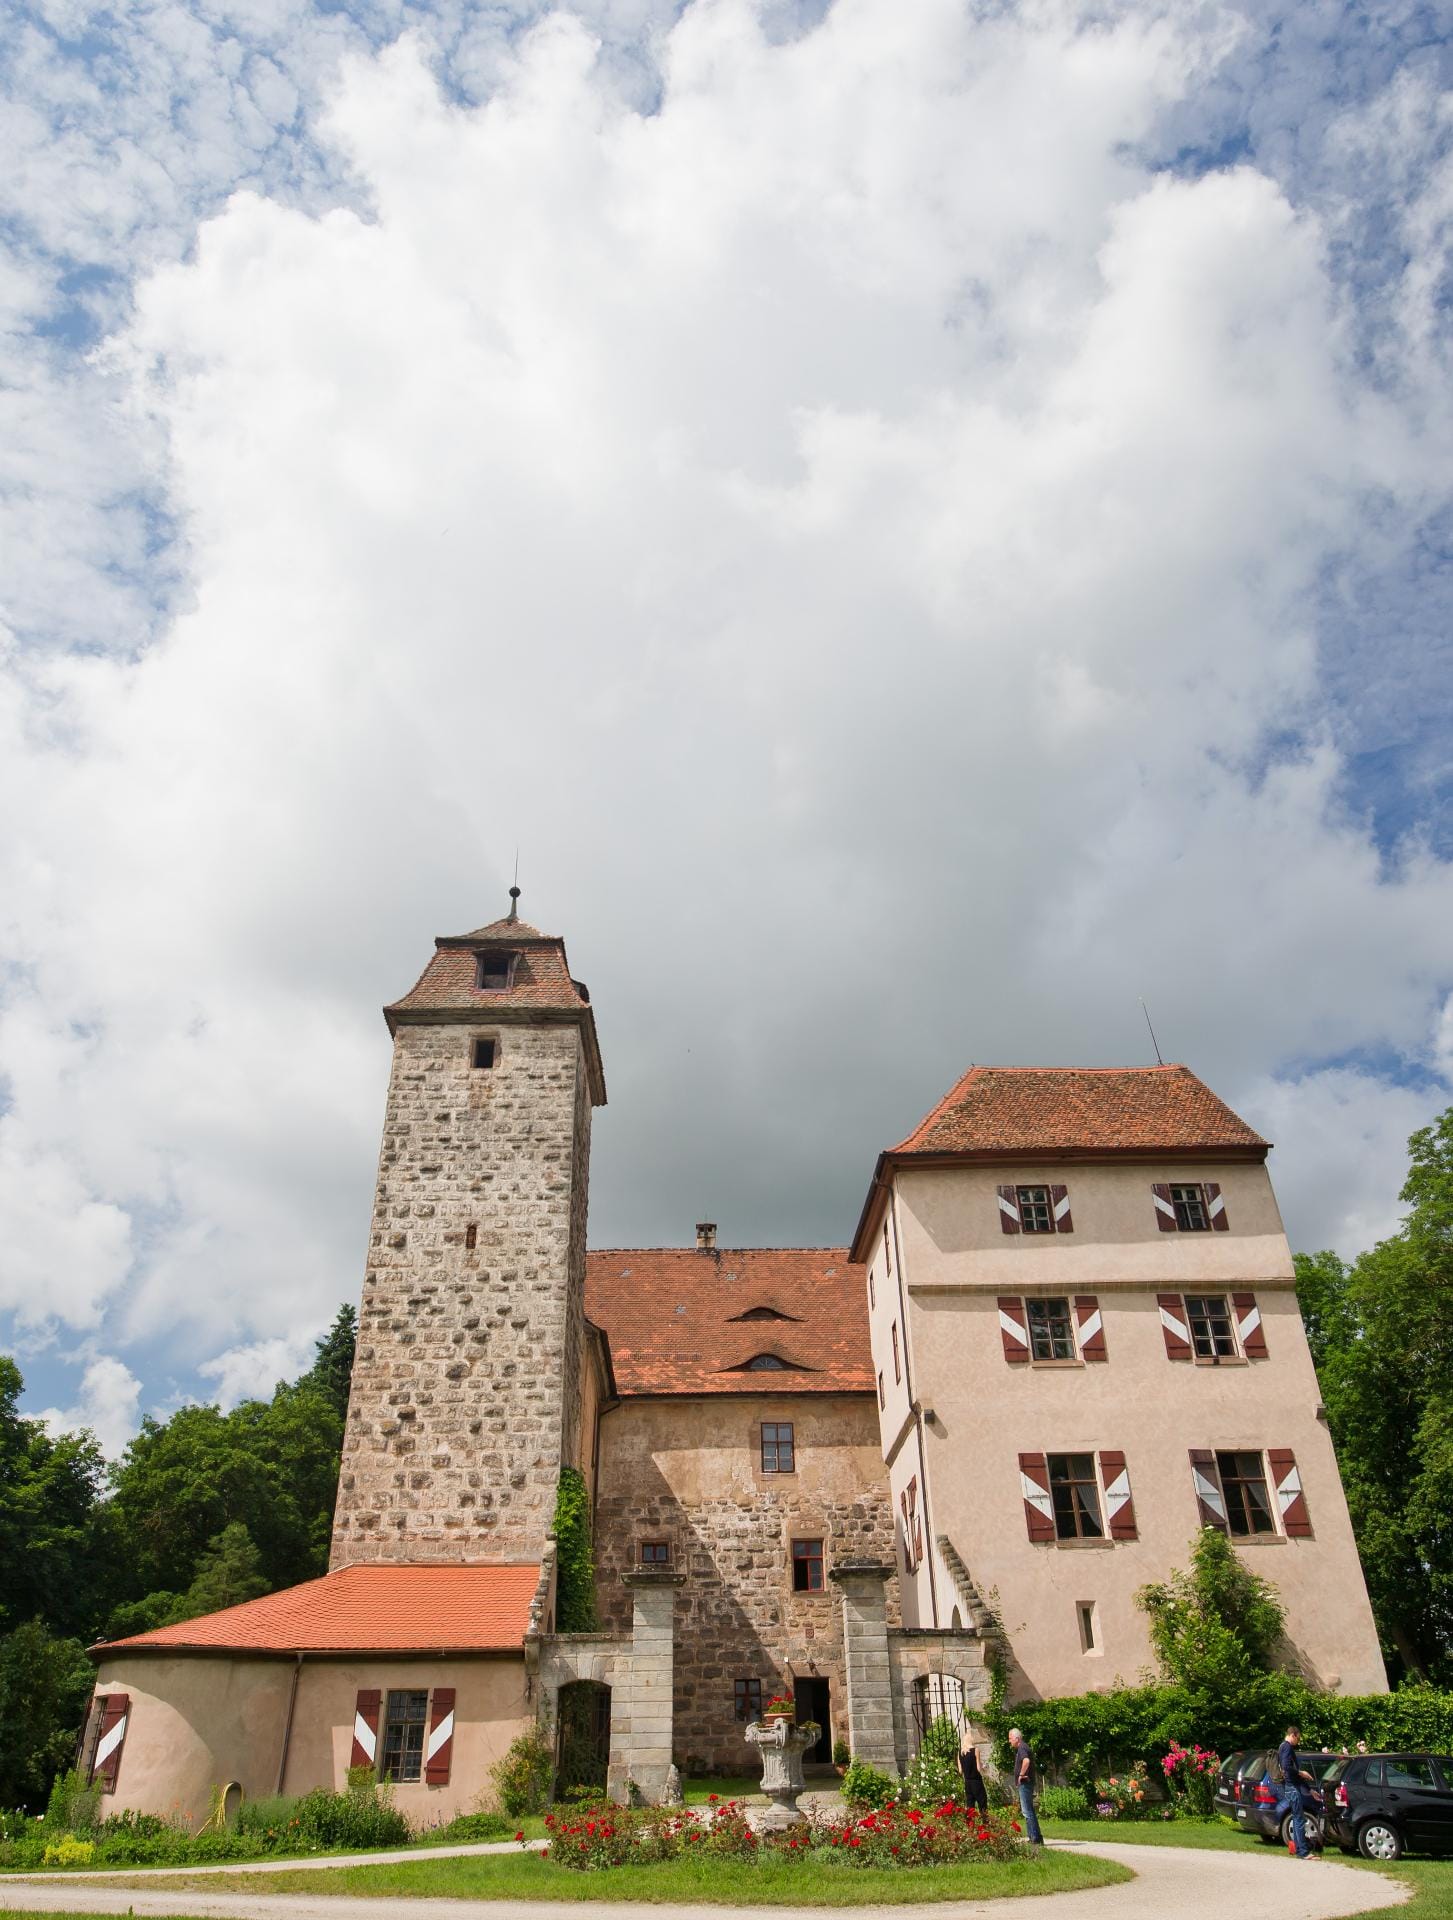 Schloss Altenmuhr ist ein Wasserschloss im mittelfränkischen Naturpark Altmühltal. Es zählt zu den interessantesten und ältesten Schlossbauten des Altmühltals. Angeblich wurde der Bau schon im 10. Jahrhundert errichtet.